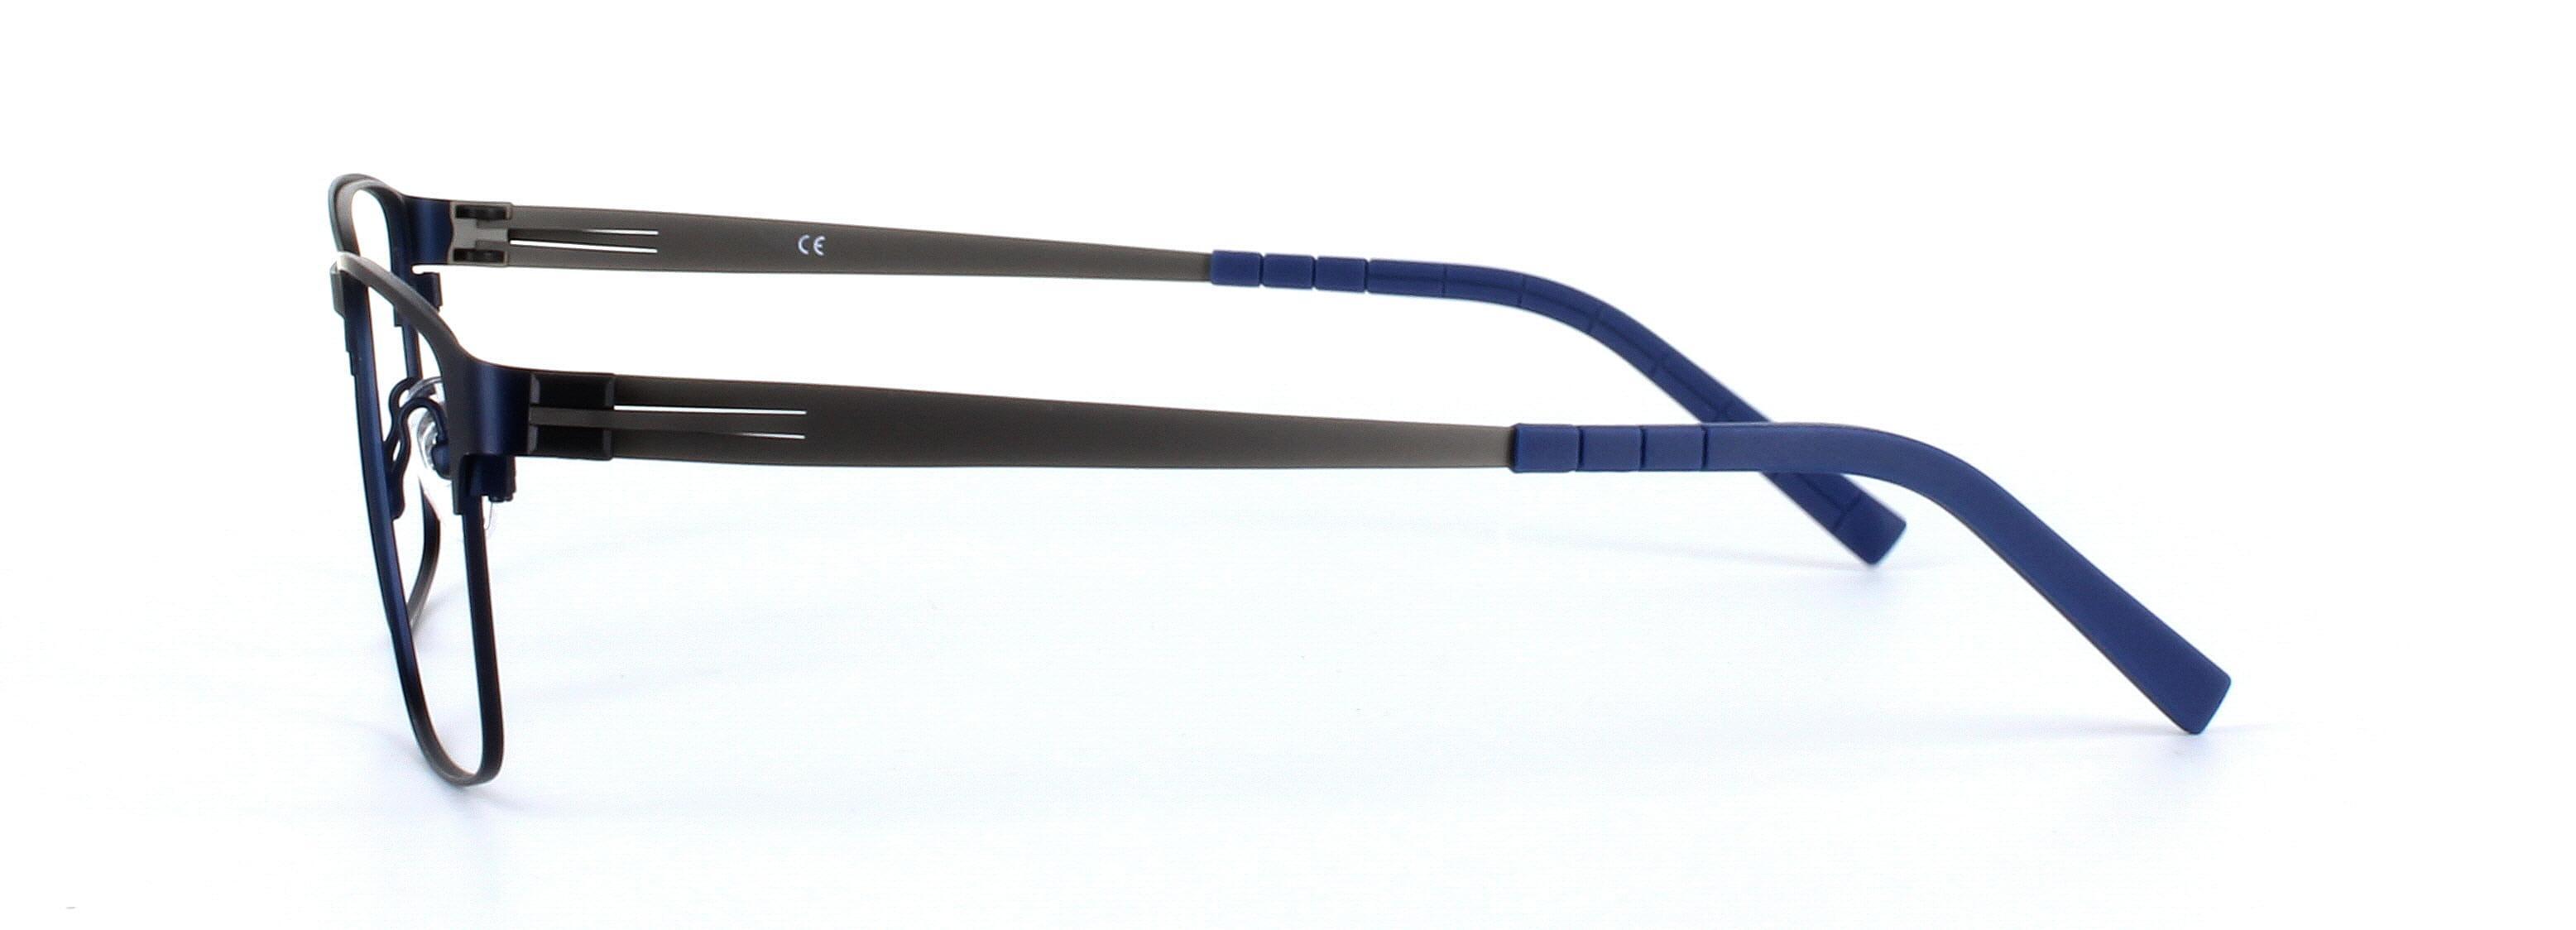 Divo Matt Blue Full Rim Square Titanium Glasses - Image View 2